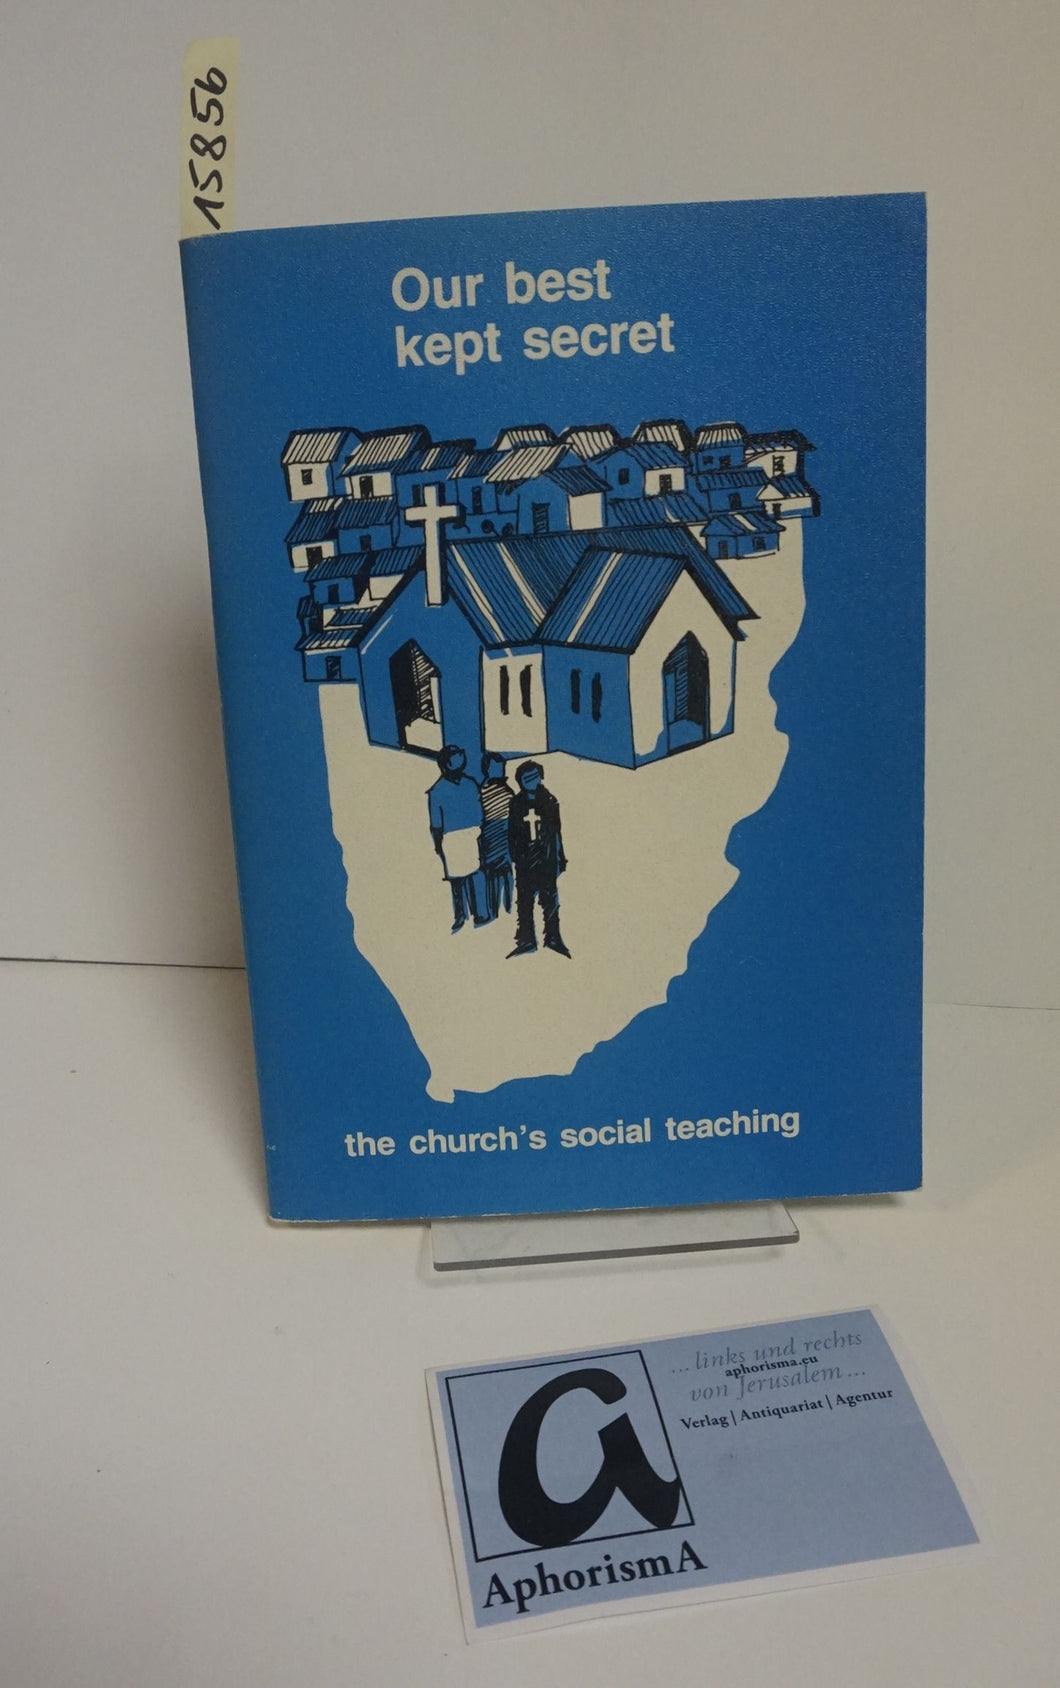 Our best kept secret, the church’s social teaching